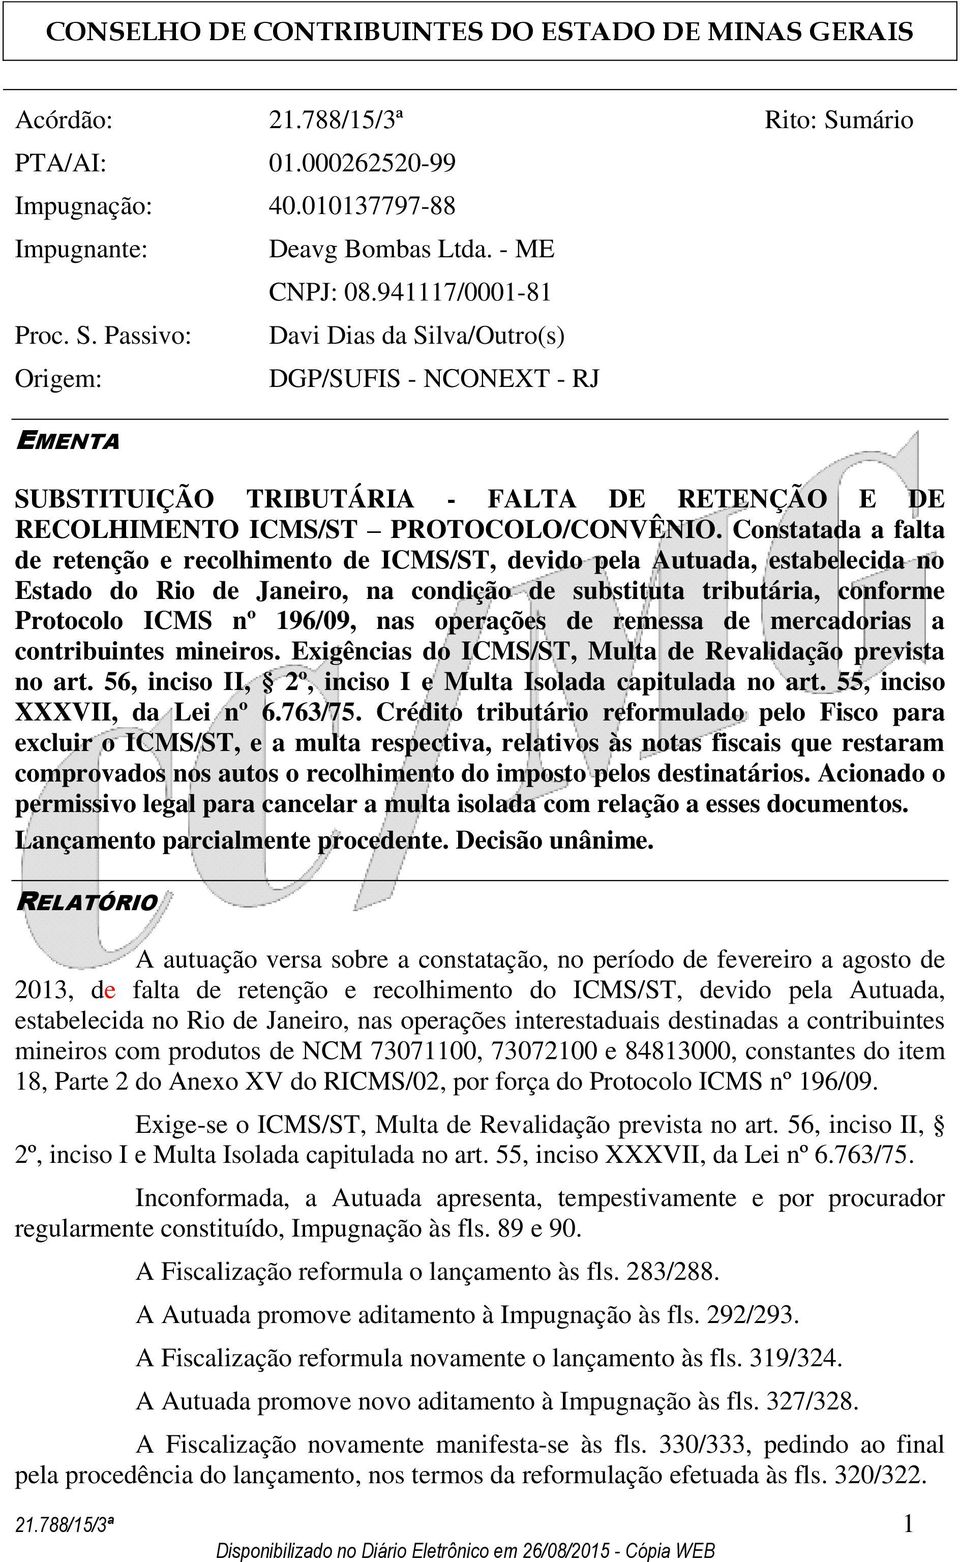 Constatada a falta de retenção e recolhimento de ICMS/ST, devido pela Autuada, estabelecida no Estado do Rio de Janeiro, na condição de substituta tributária, conforme Protocolo ICMS nº 196/09, nas